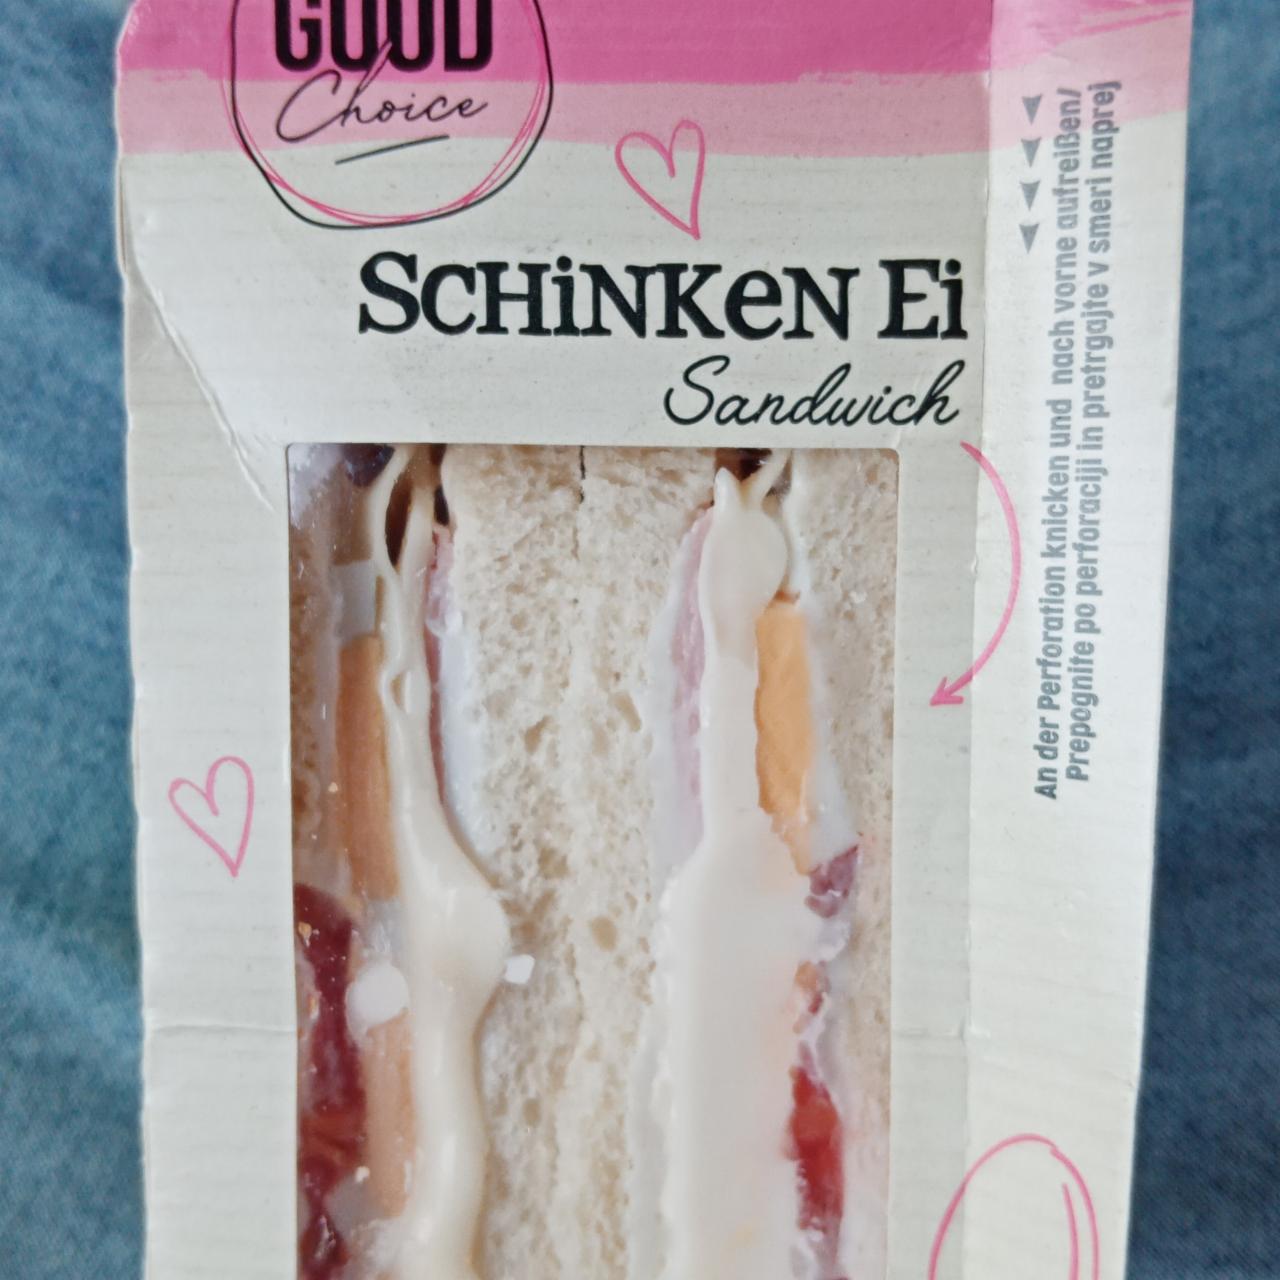 Fotografie - Schinken Ei Sandwich Good choice